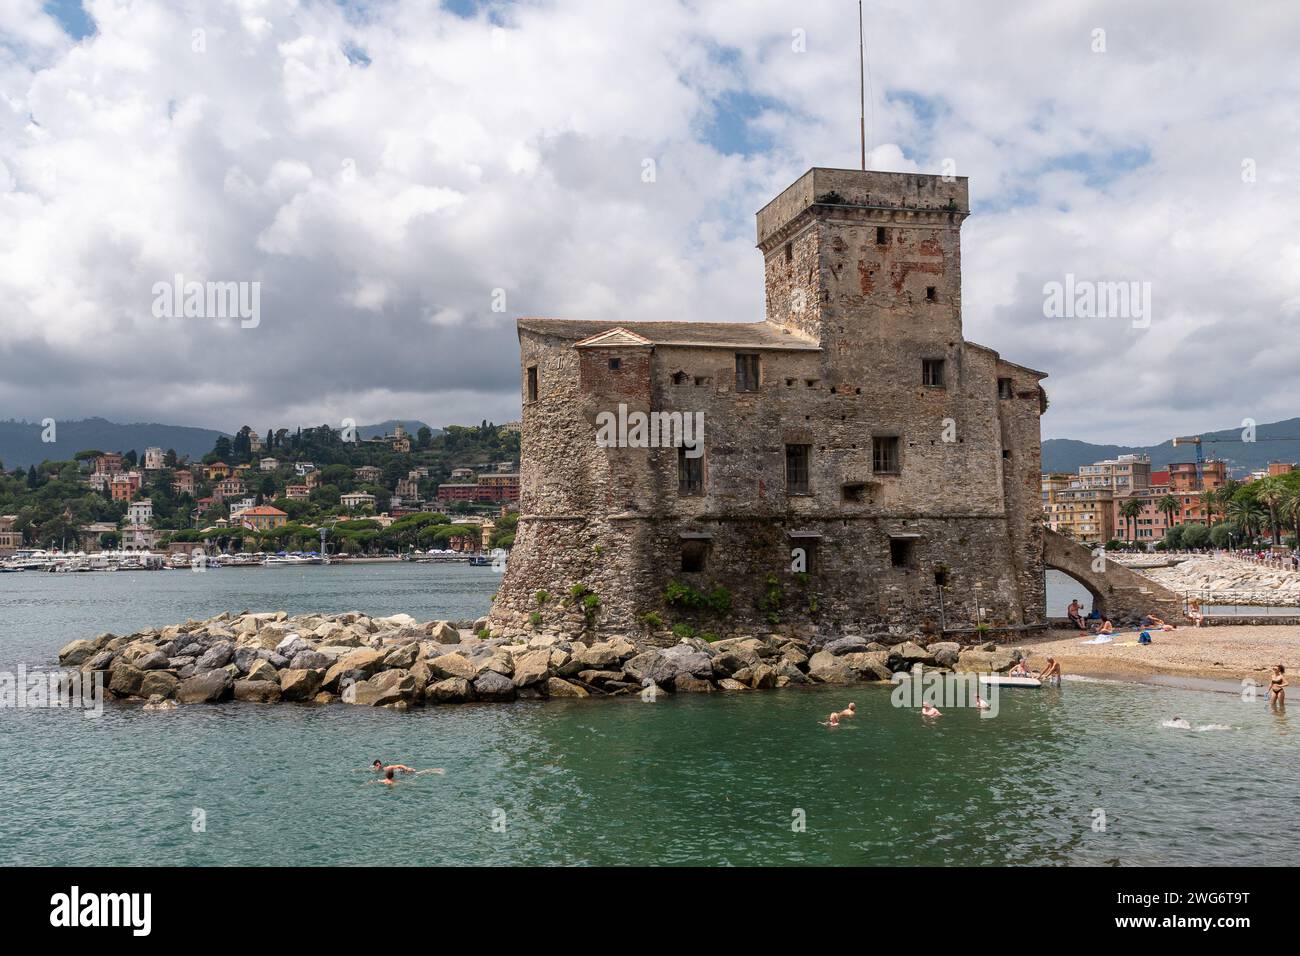 Le château de bord de mer, construit en 1551 pour défendre la ville contre les pirates sarrasins, avec les gens bronzer et nager, Rapallo, Gênes, Ligurie, Italie Banque D'Images